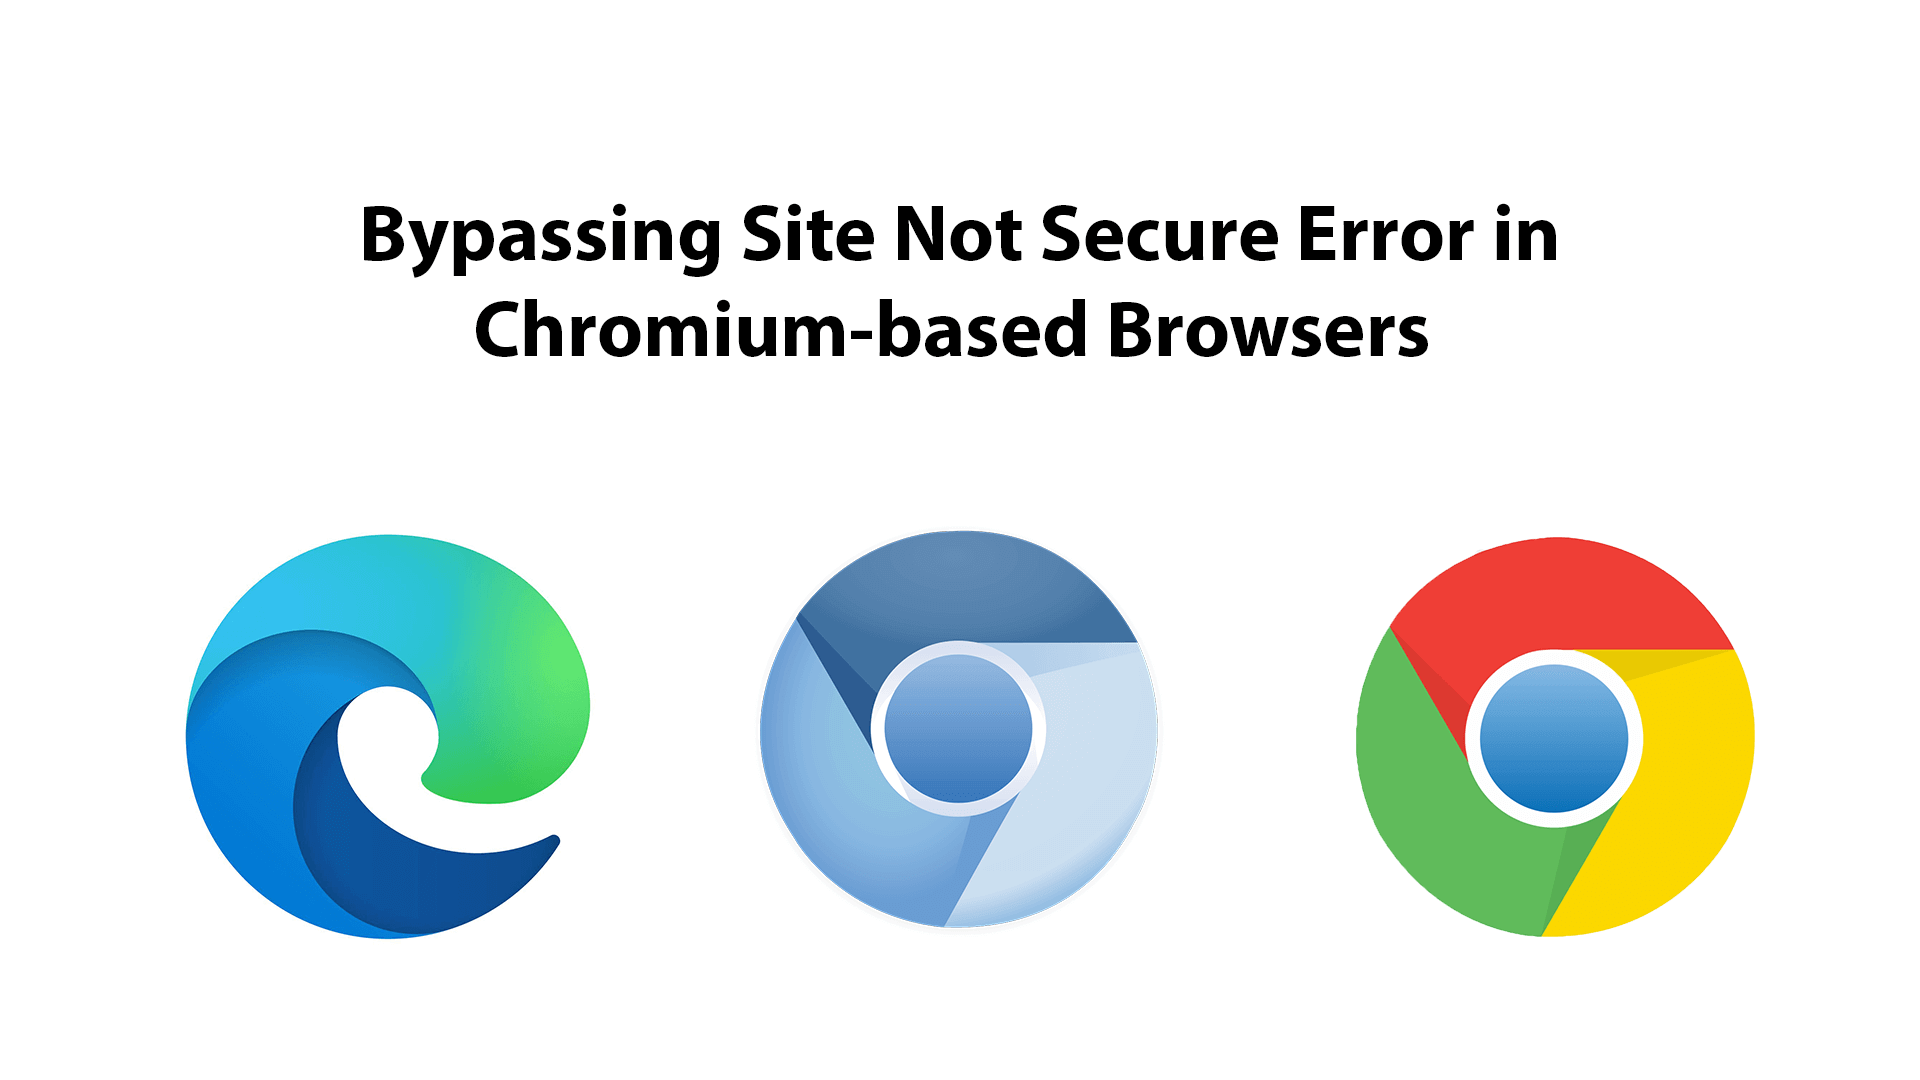 Thisisunsafe. Not secure. Thisisunsafe Chrome.